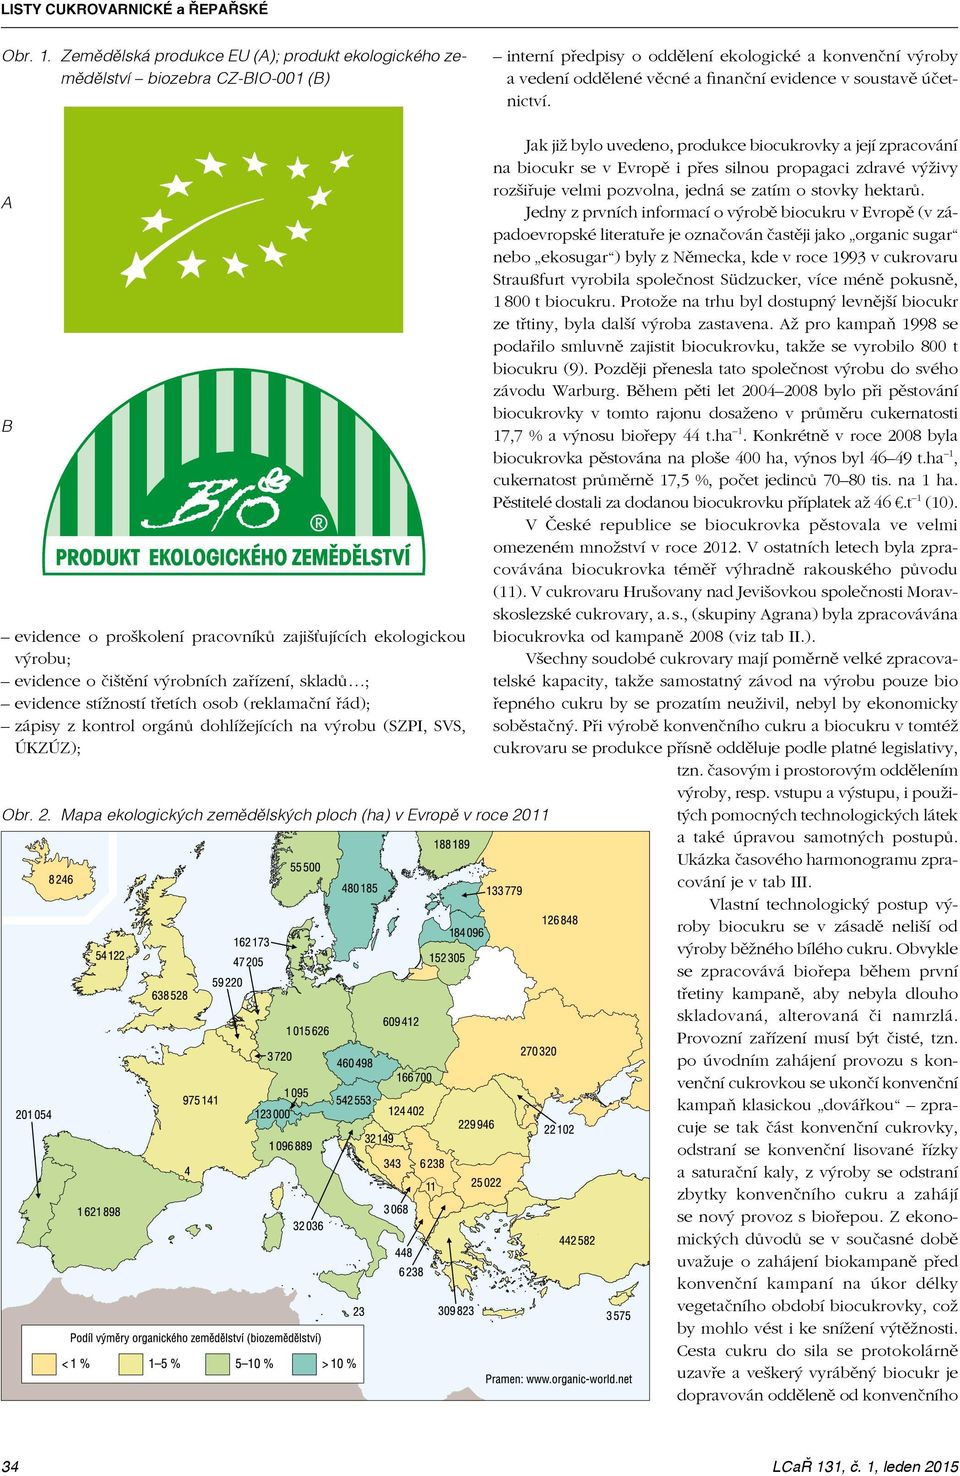 účetnictví. Jak již bylo uvedeno, produkce biocukrovky a její zpracování na biocukr se v Evropě i přes silnou propagaci zdravé výživy rozšiřuje velmi pozvolna, jedná se zatím o stovky hektarů.